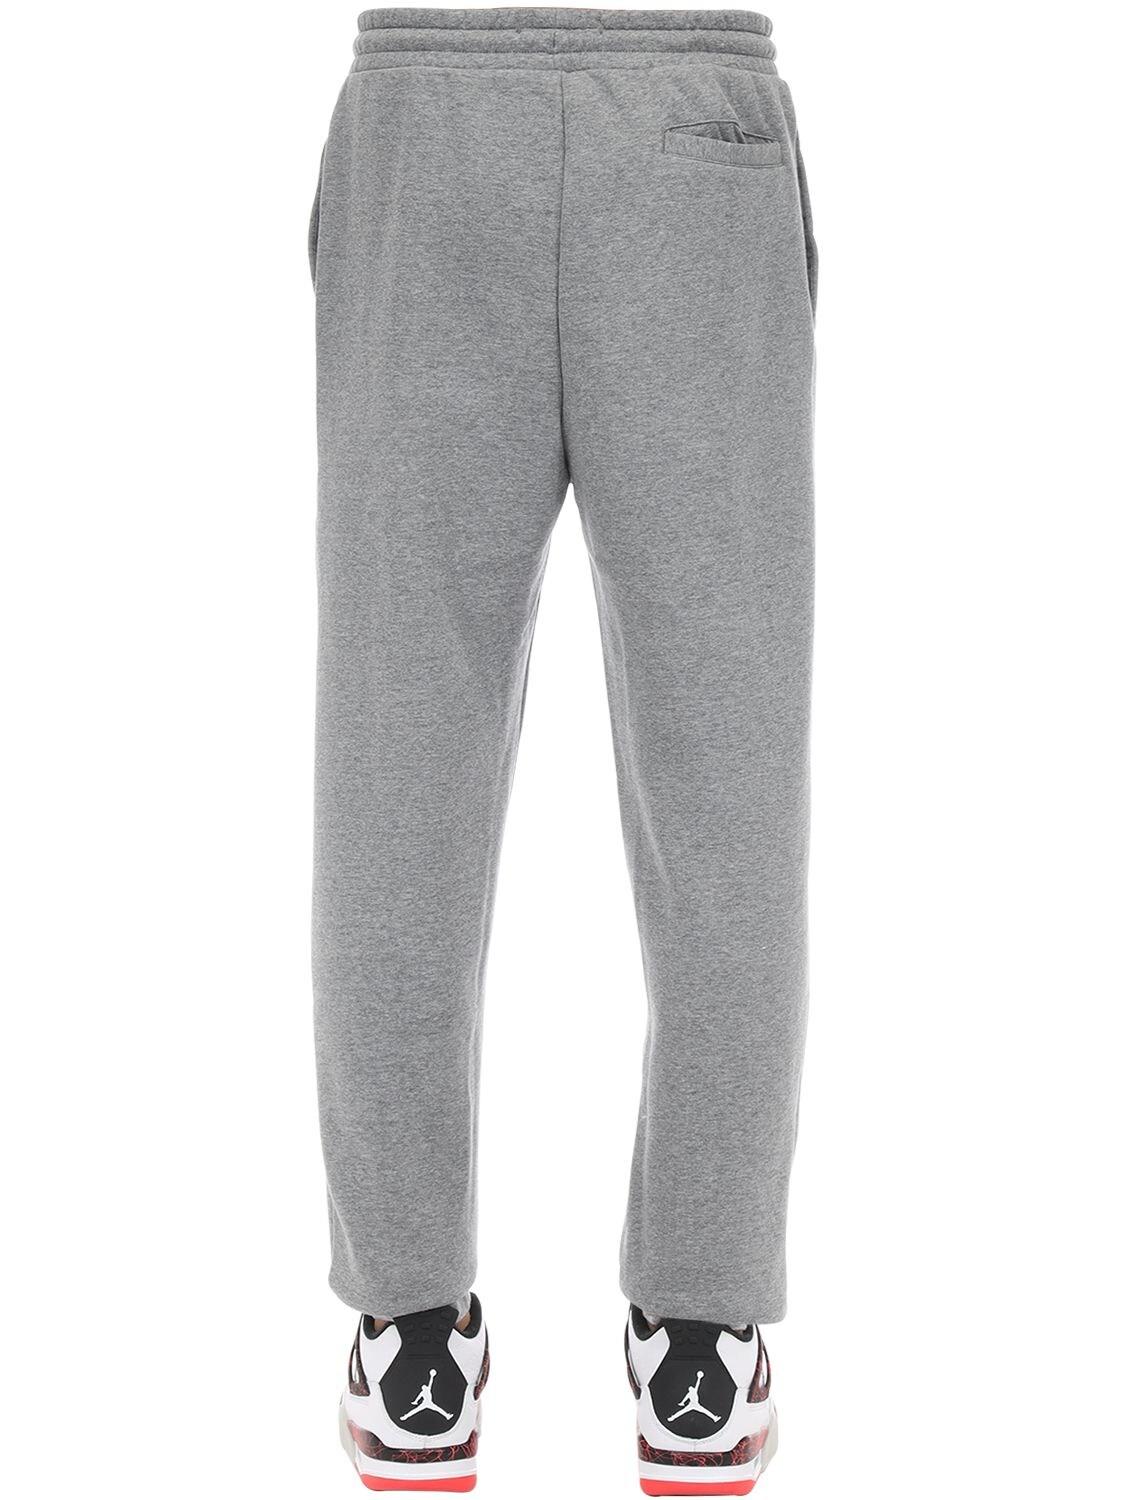 Nike Air Jordan Cotton Blend Sweatpants in Grey (Gray) for Men - Lyst